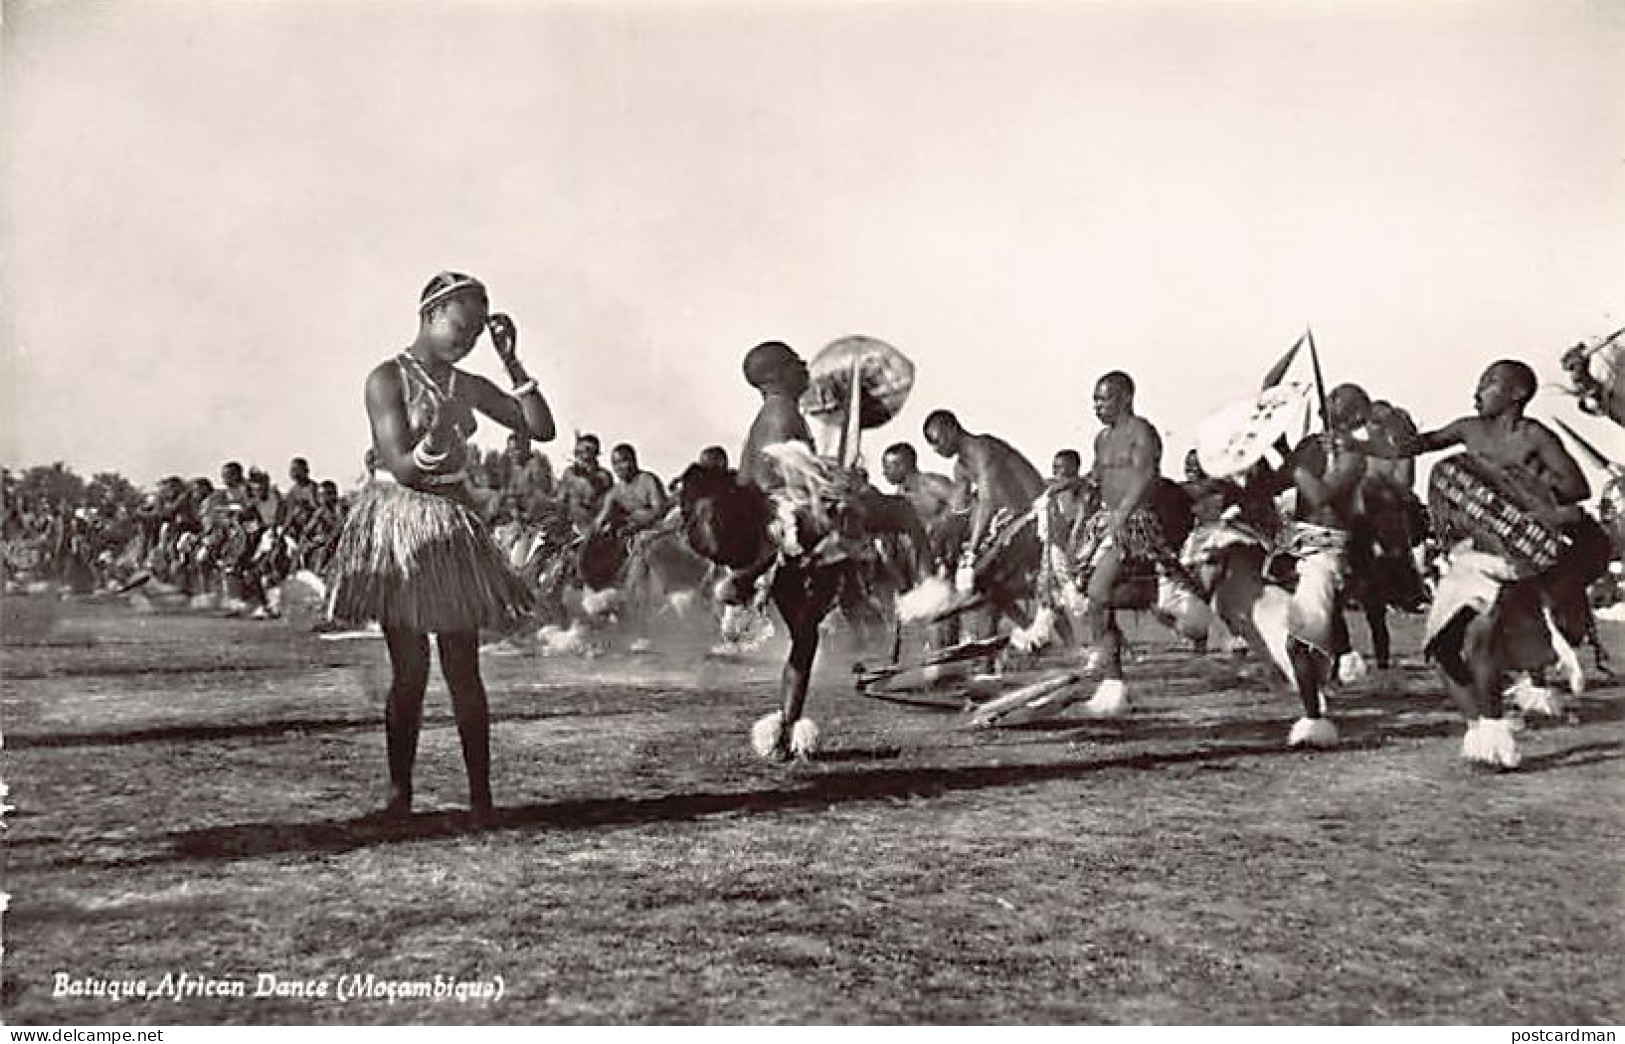 MOÇAMBIQUE Mozambique - Batuque African Dance - REAL PHOTO - Ed. / Publ. M. S. & Co. 15 - Mozambique